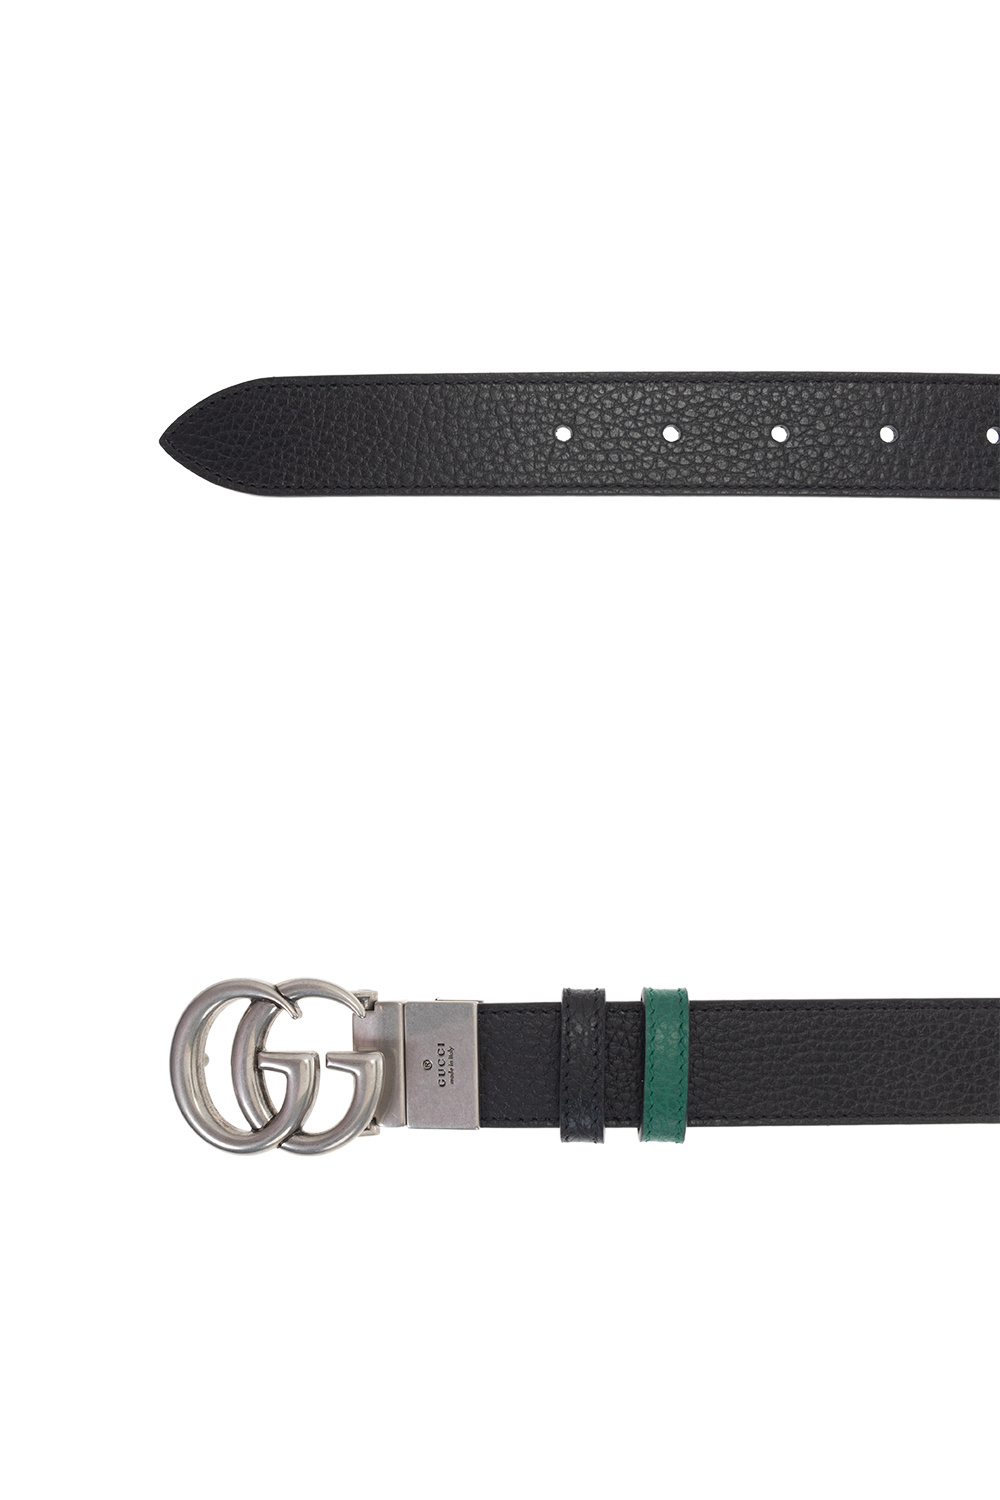 Belt nữ LV bản 3,5cm đẹp cao cấp 1200k #hàngvề #clickHD Hàng khách